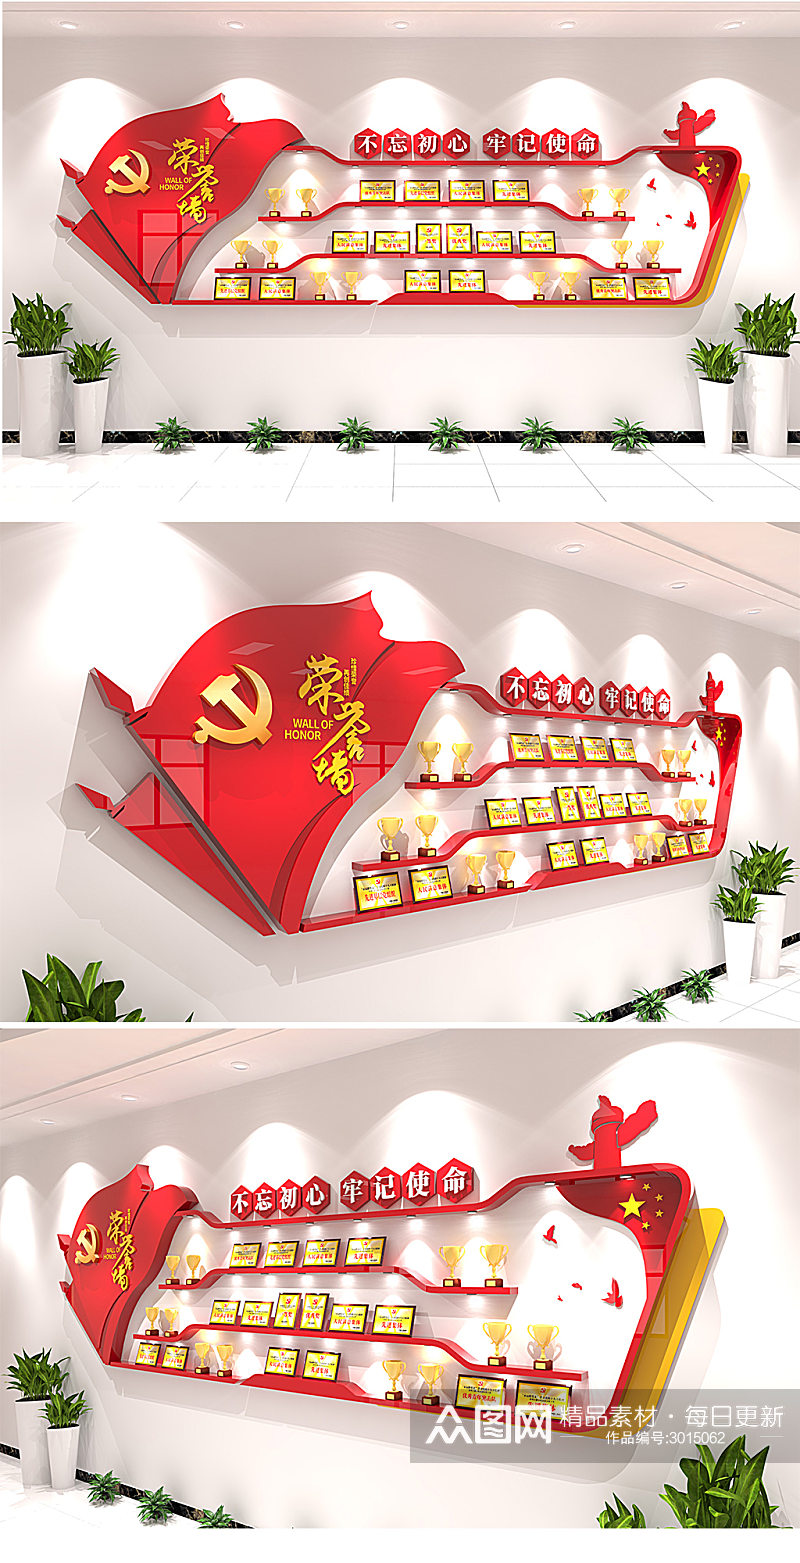 红色大气党建廉政荣誉墙文化墙成就展厅设计素材